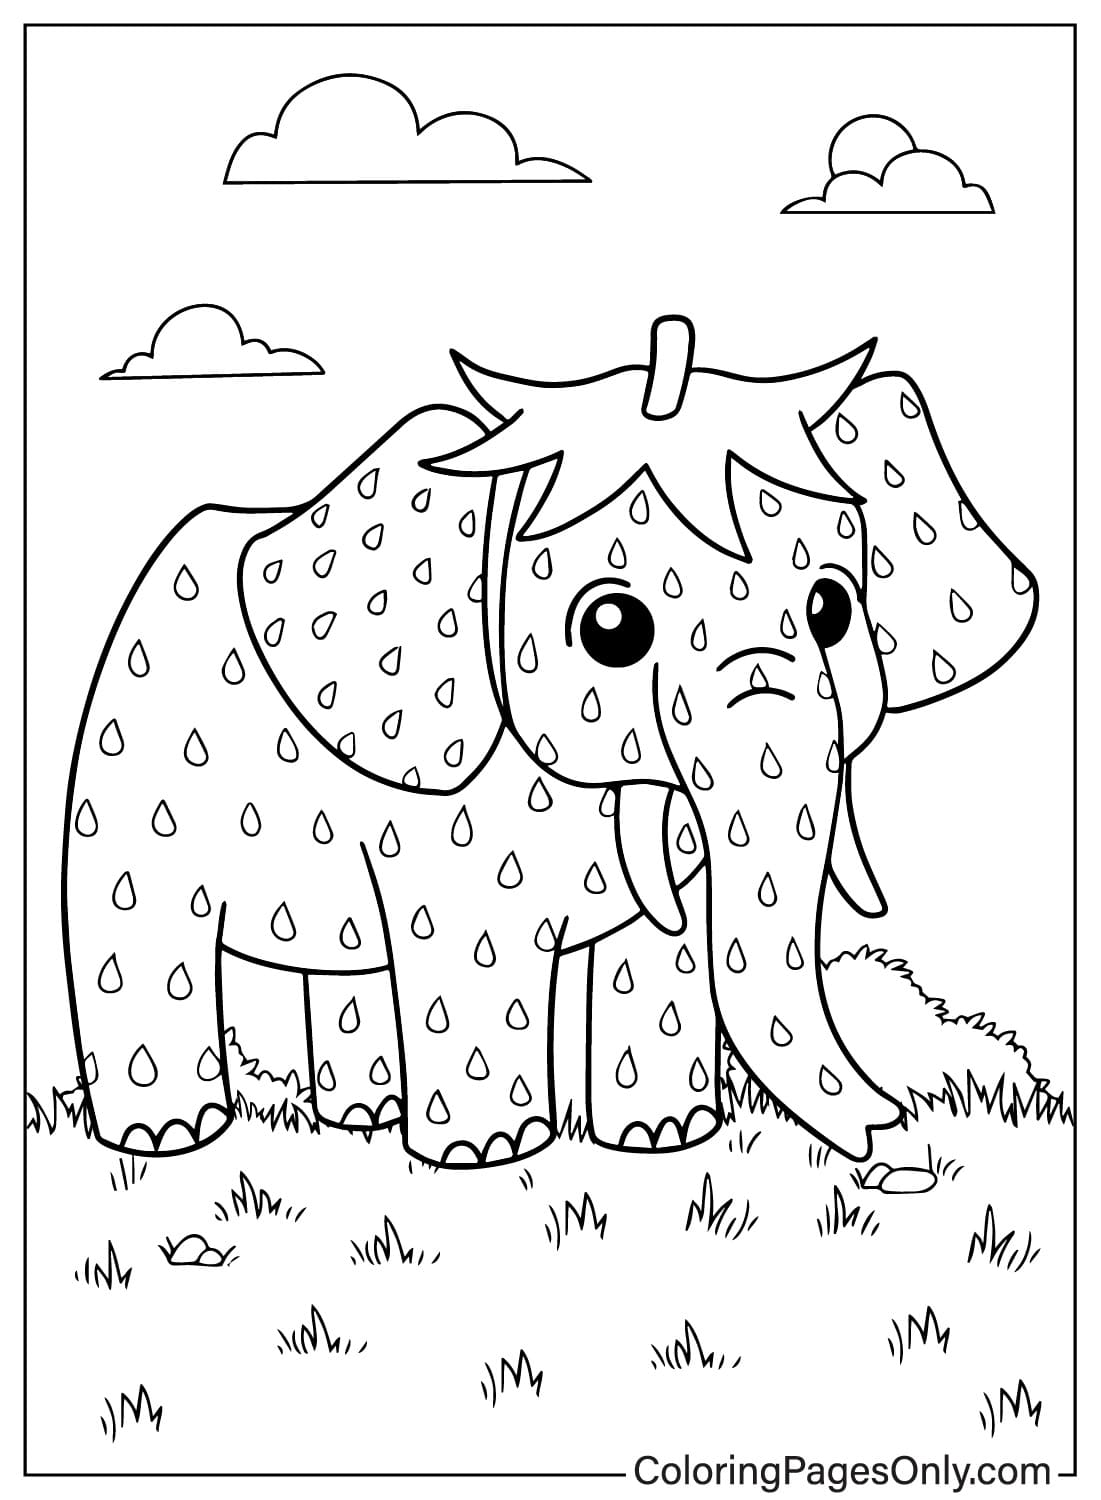 Página para colorear de meme popular de Strawberry Elephant